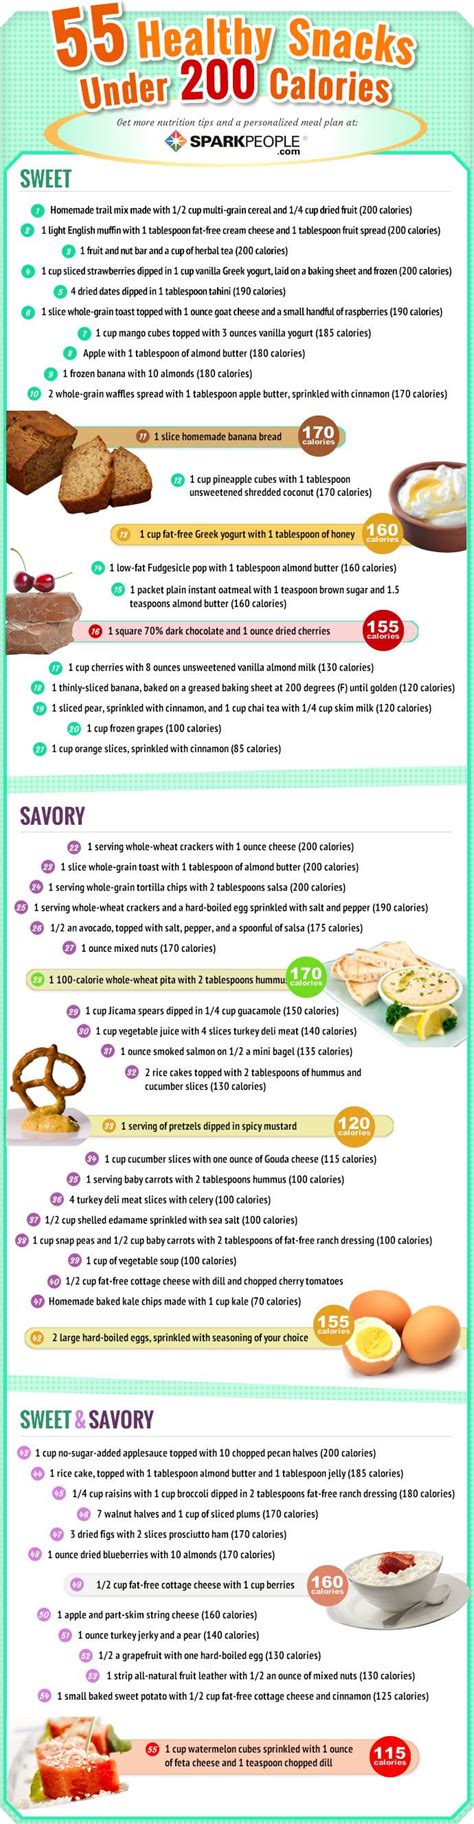 55 Healthy Snacks Under 200 Calories Healthy Snacks 200 Calories Healthy